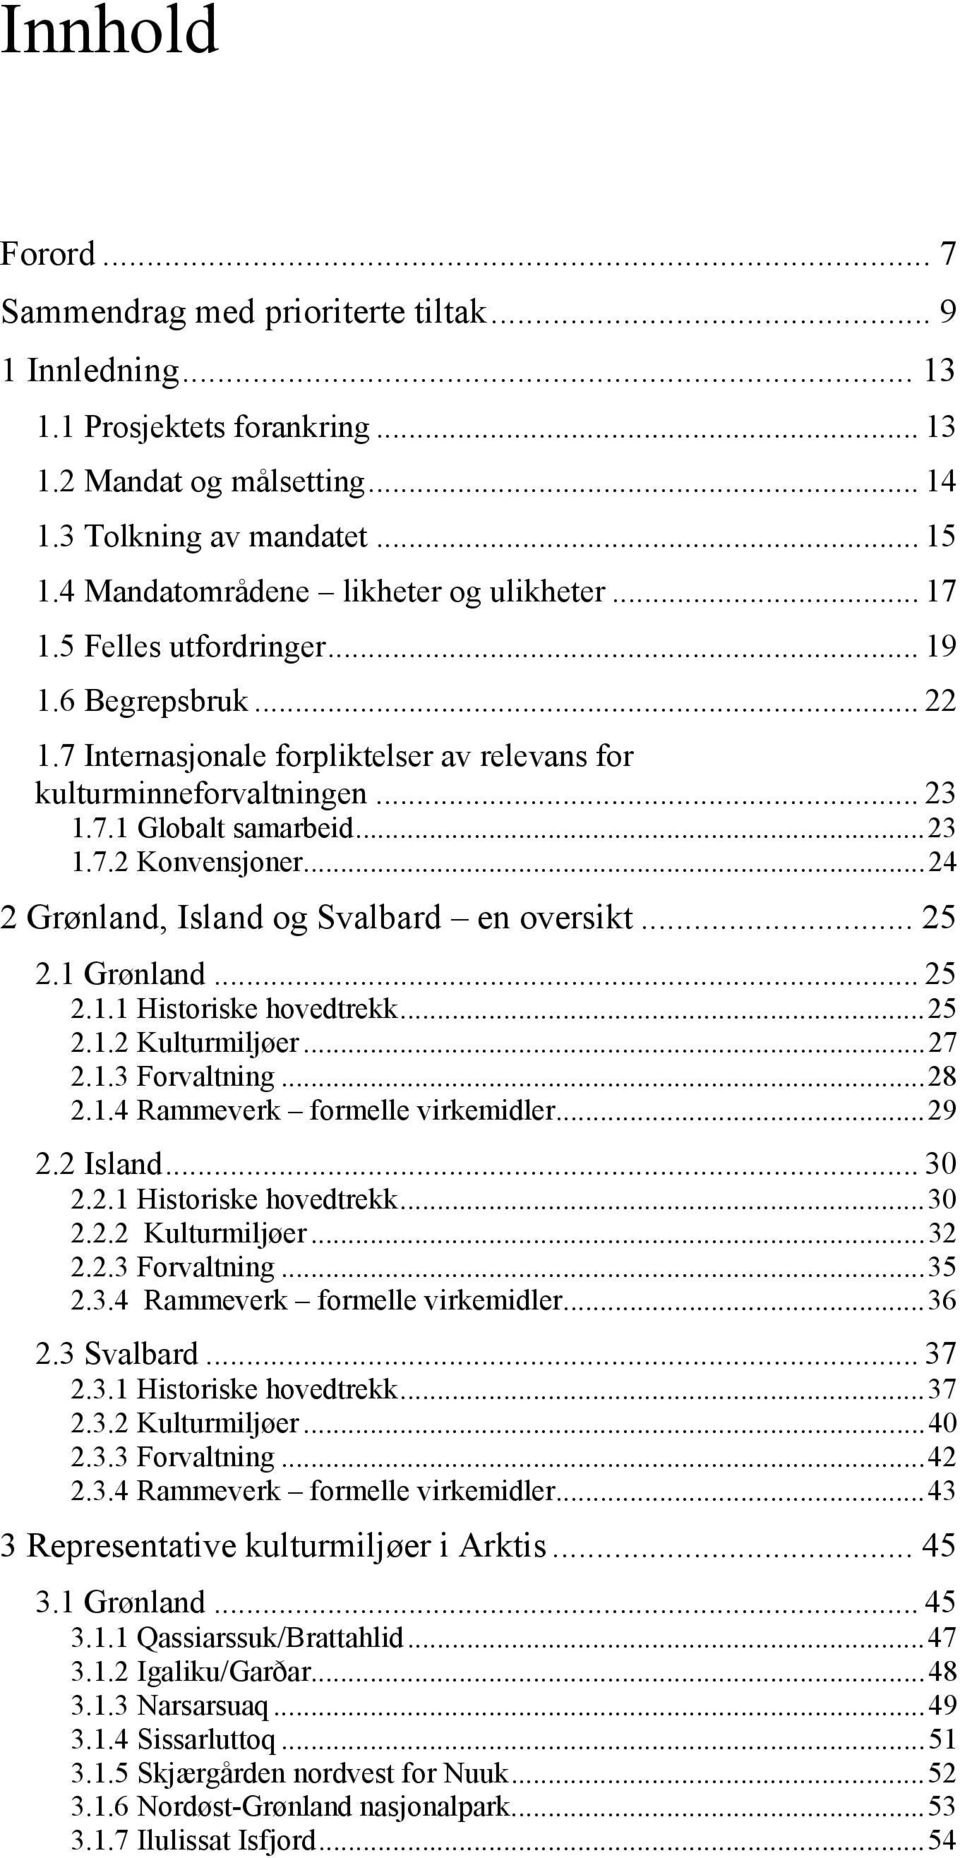 ..23 1.7.2 Konvensjoner...24 2 Grønland, Island og Svalbard en oversikt... 25 2.1 Grønland... 25 2.1.1 Historiske hovedtrekk...25 2.1.2 Kulturmiljøer...27 2.1.3 Forvaltning...28 2.1.4 Rammeverk formelle virkemidler.